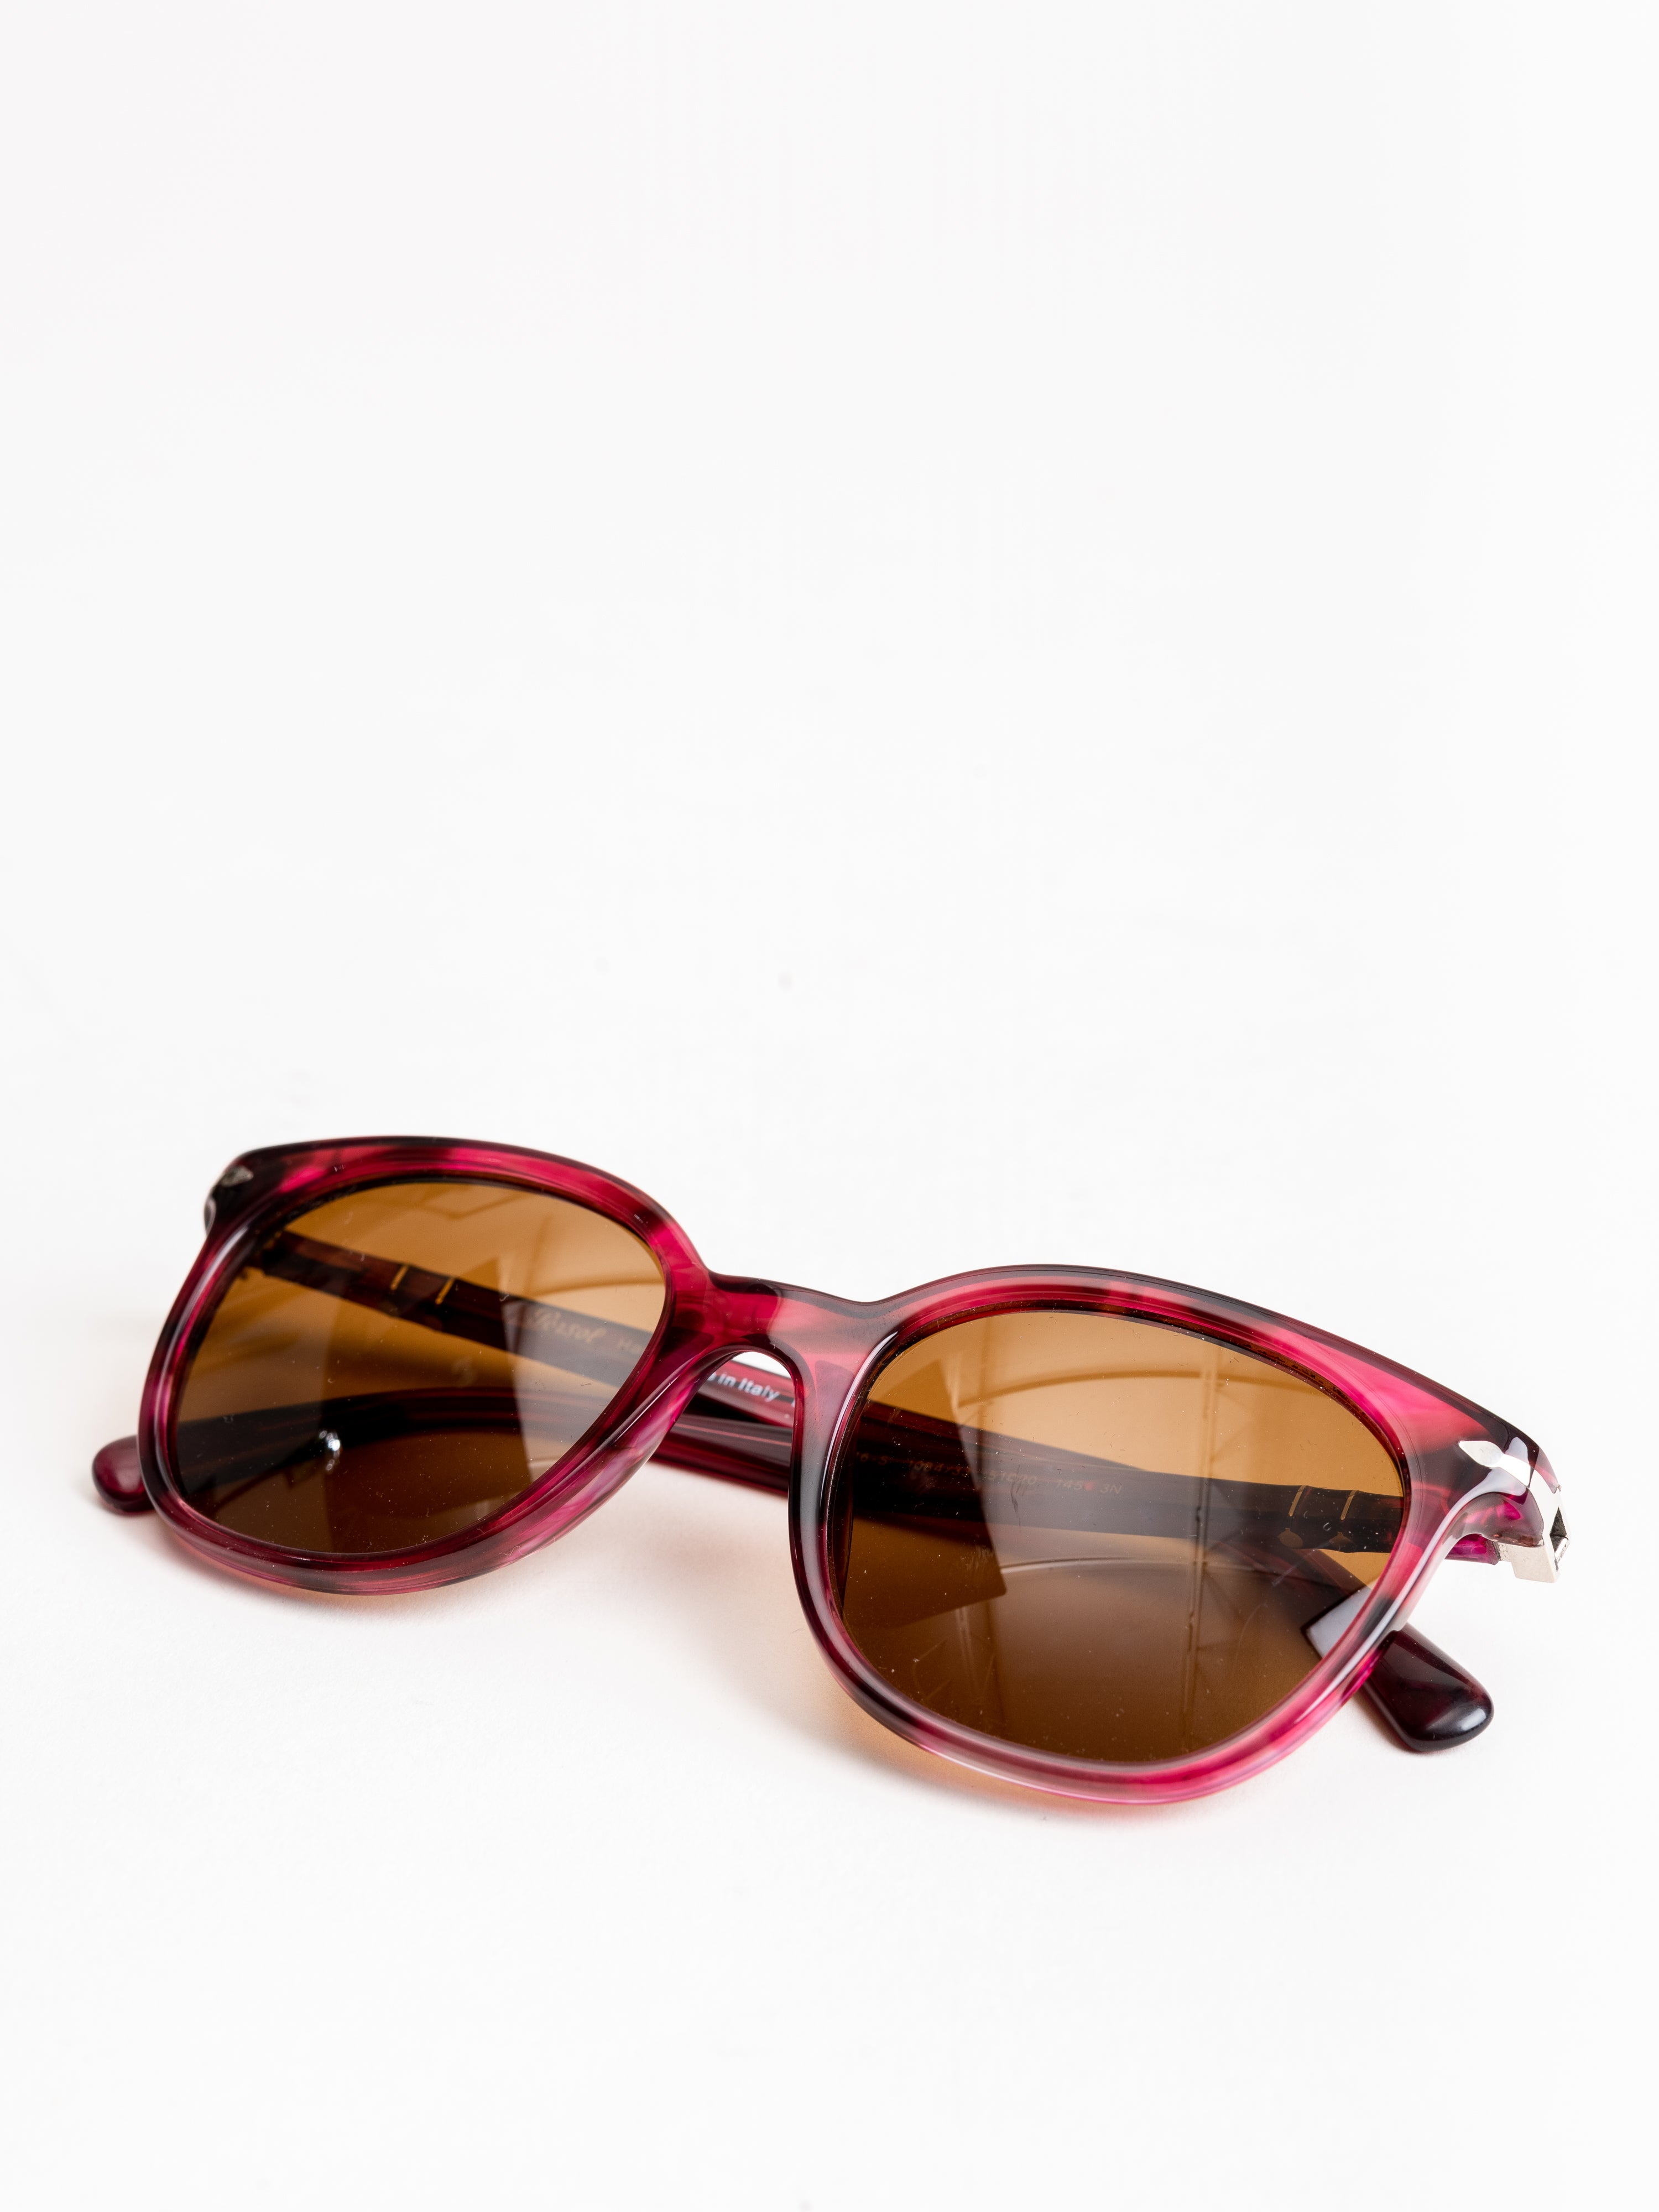 Designer Frames Outlet. Persol Sunglasses PO3314S